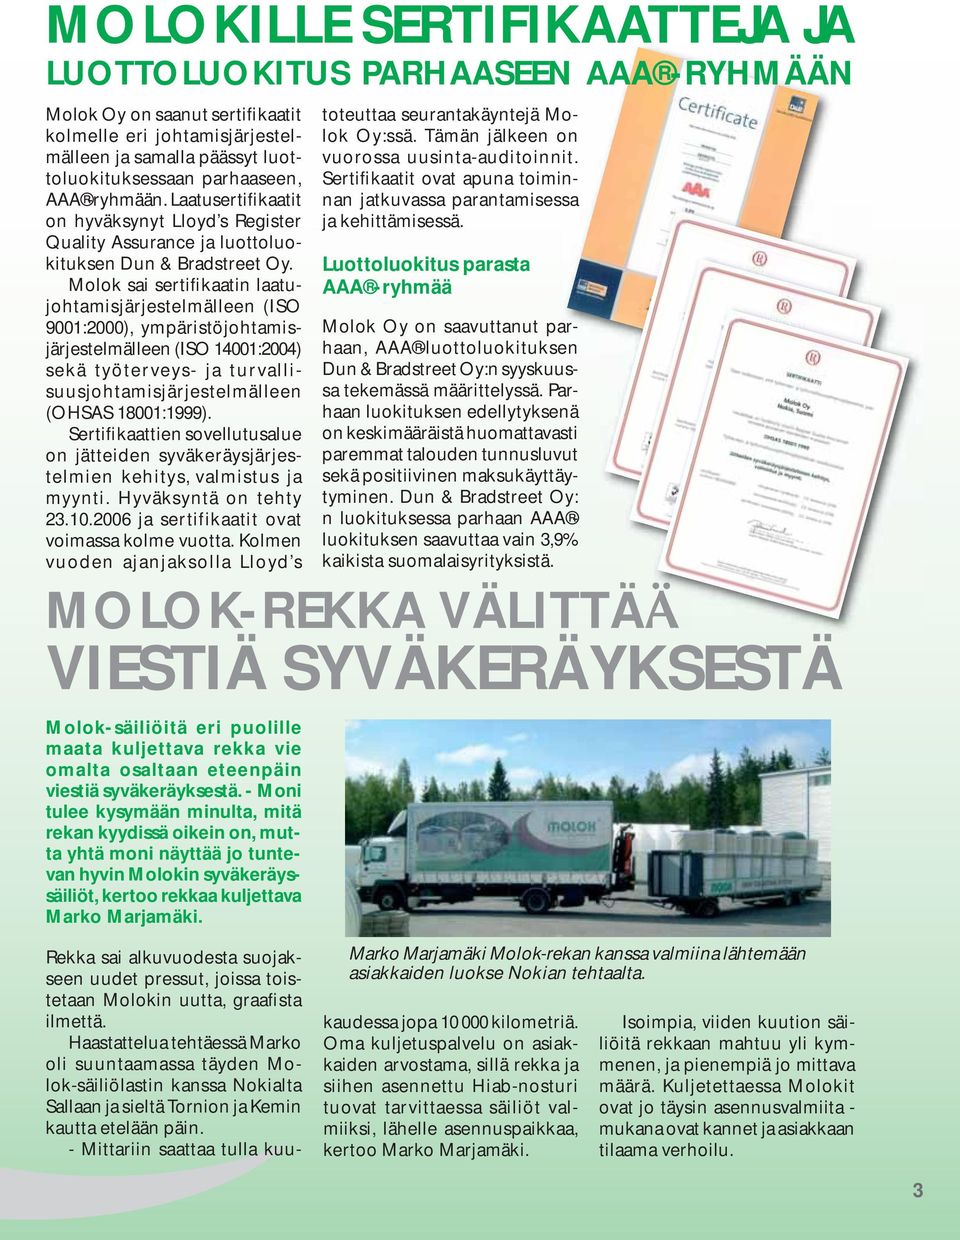 Molok sai sertifikaatin laatujohtamisjärjestelmälleen (ISO 9001:2000), ympäristöjohtamisjärjestelmälleen (ISO 14001:2004) sekä työterveys- ja turvallisuusjohtamisjärjestelmälleen (OHSAS 18001:1999).